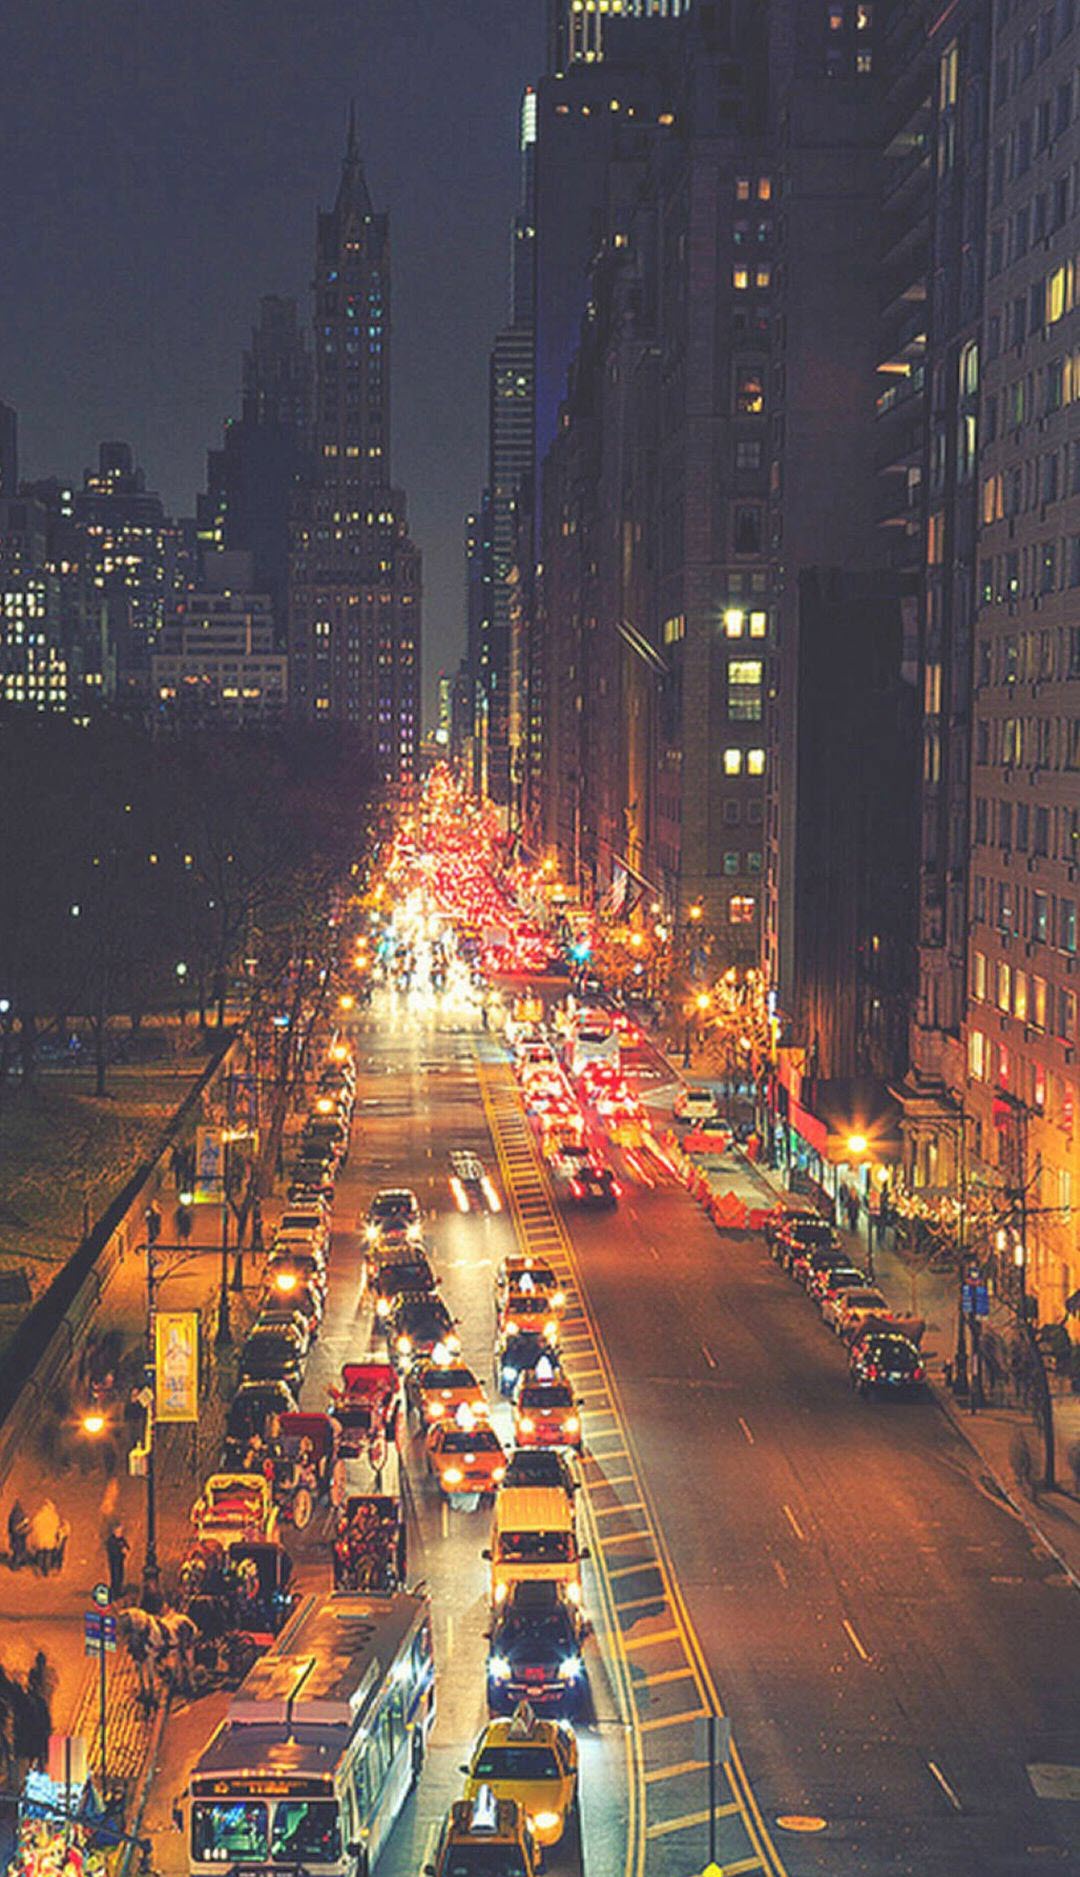 Hình ảnh đường phố về đêm đẹp tuyệt